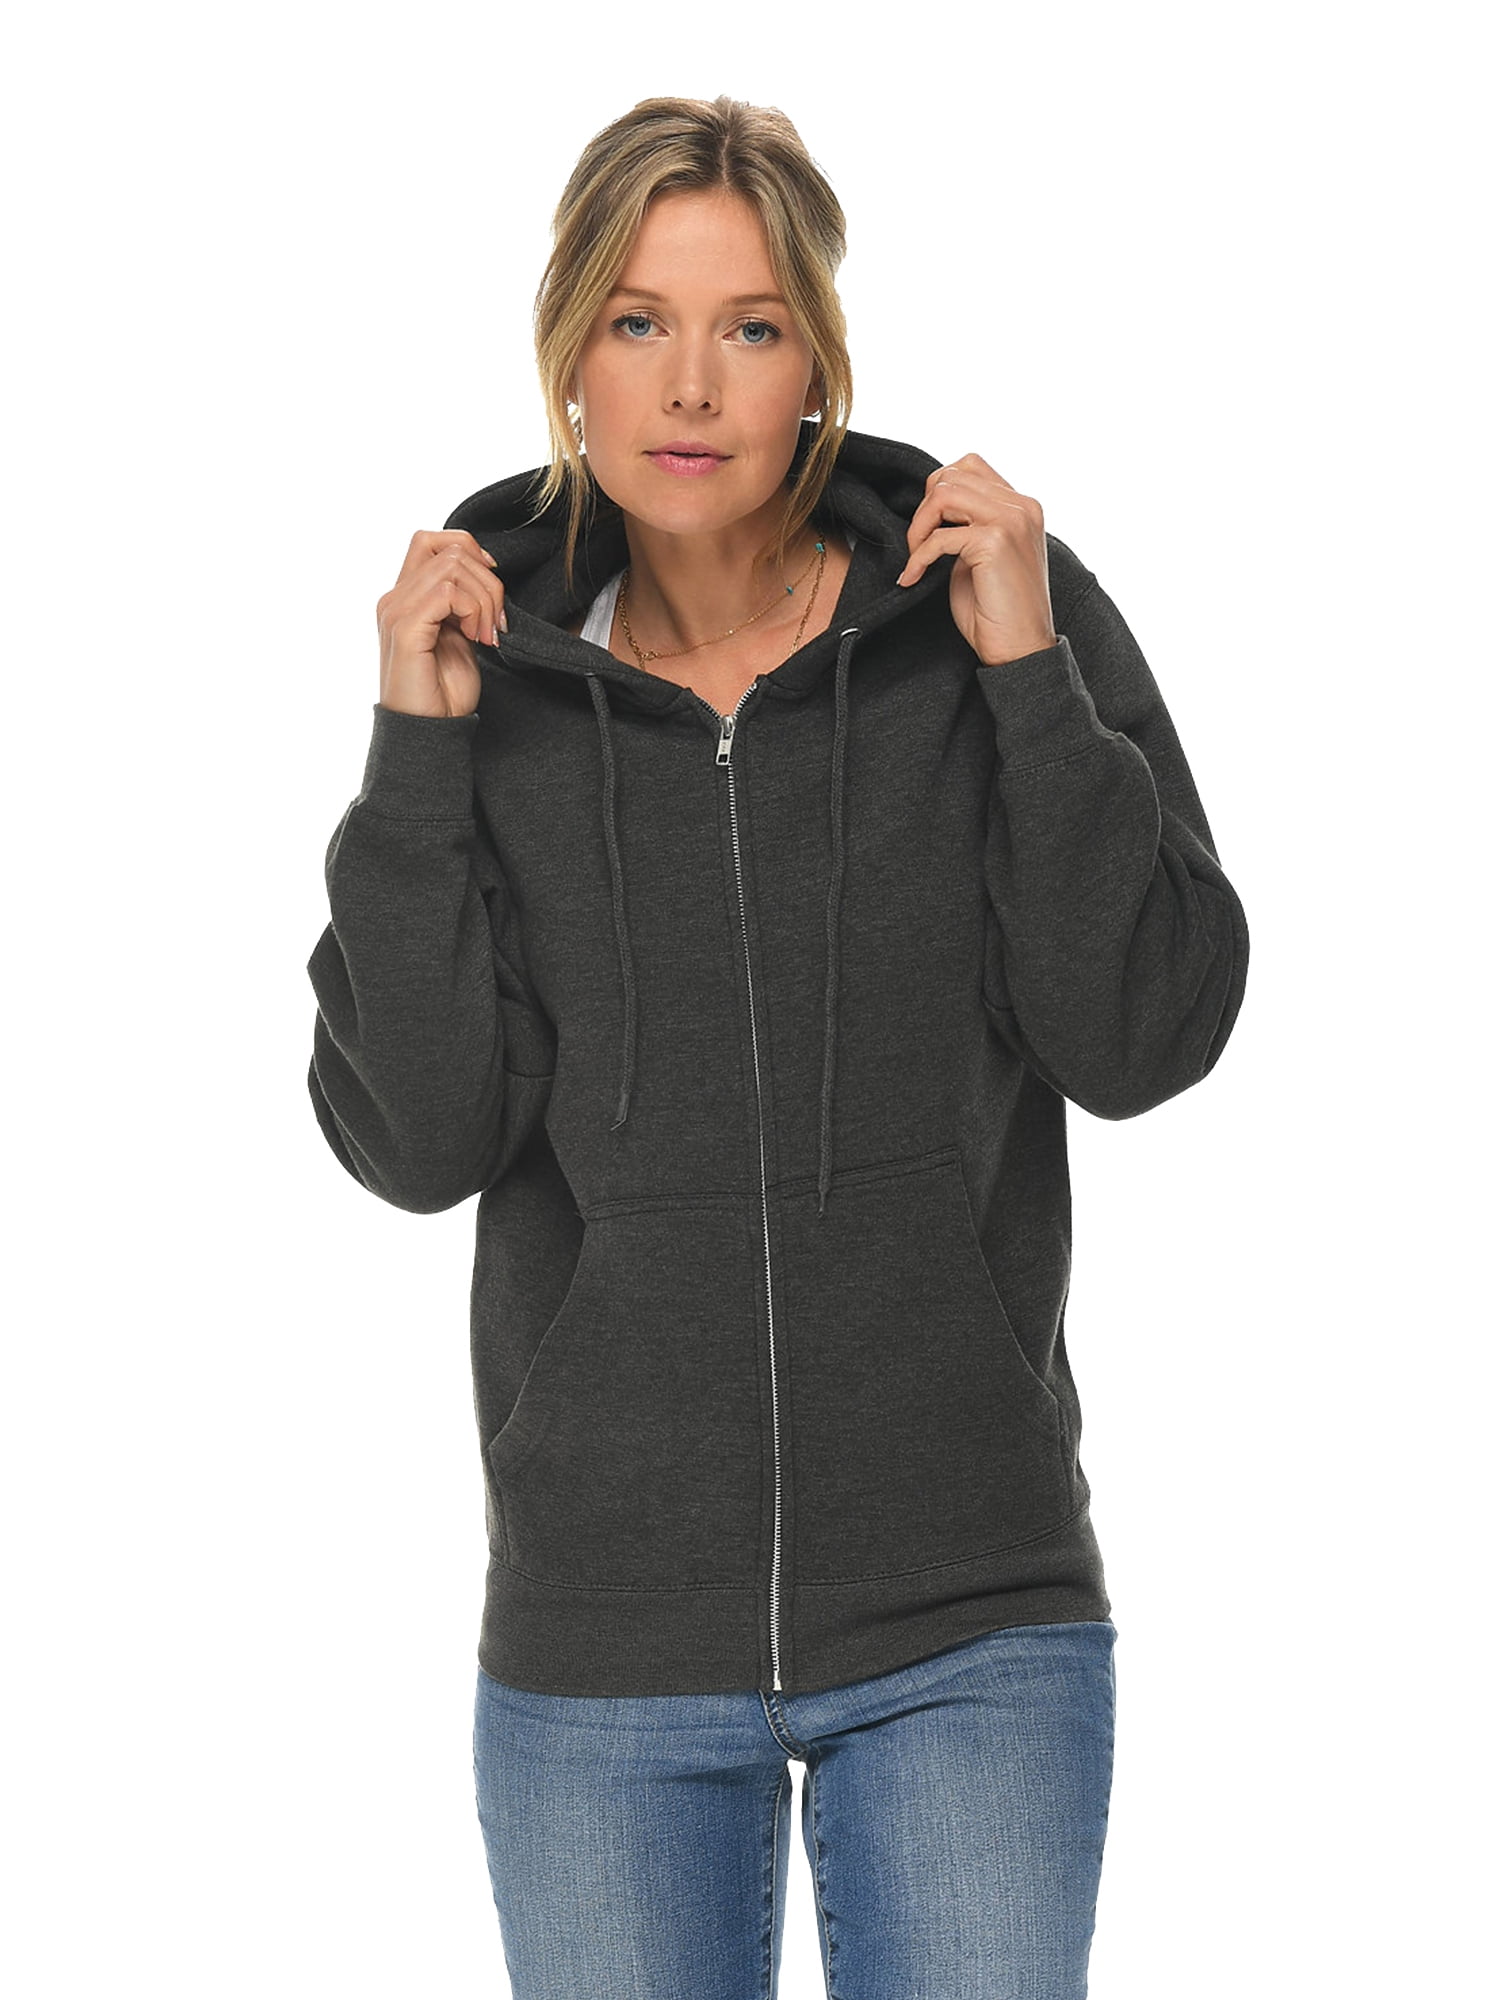 Unisex Zipper Hoodie for Men Women Sweatshirts Casual Full Zip